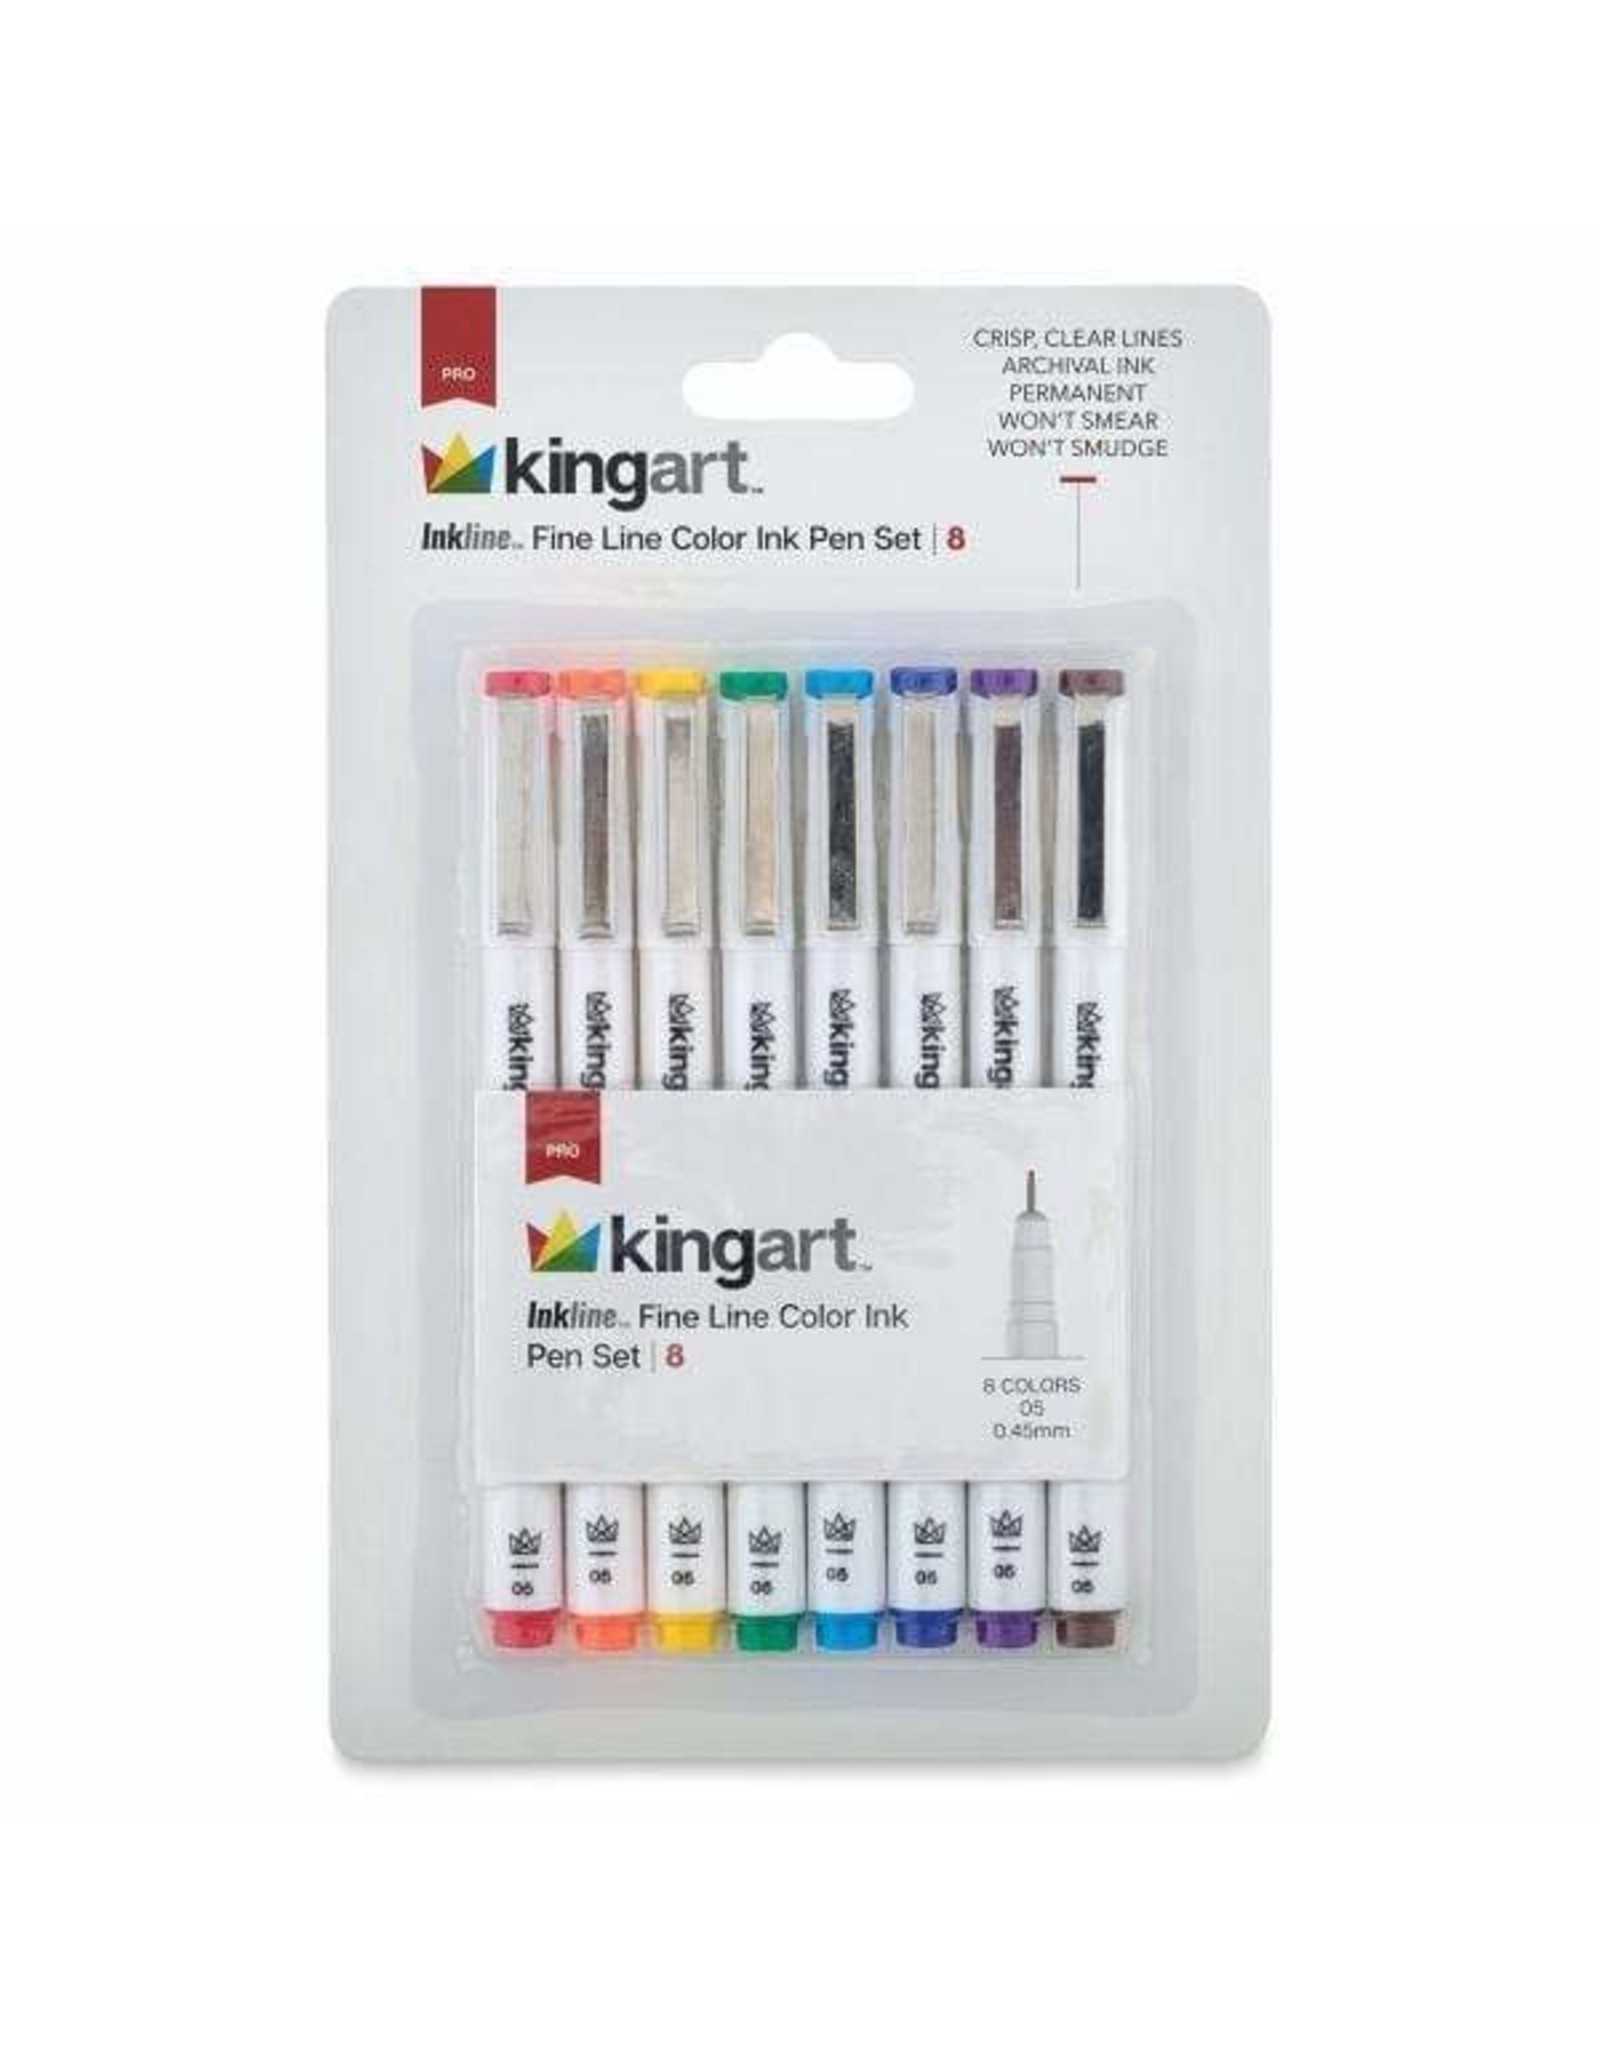 KINGART 8 PC Inkline Fine Line Color Ink Pen Set Mixed